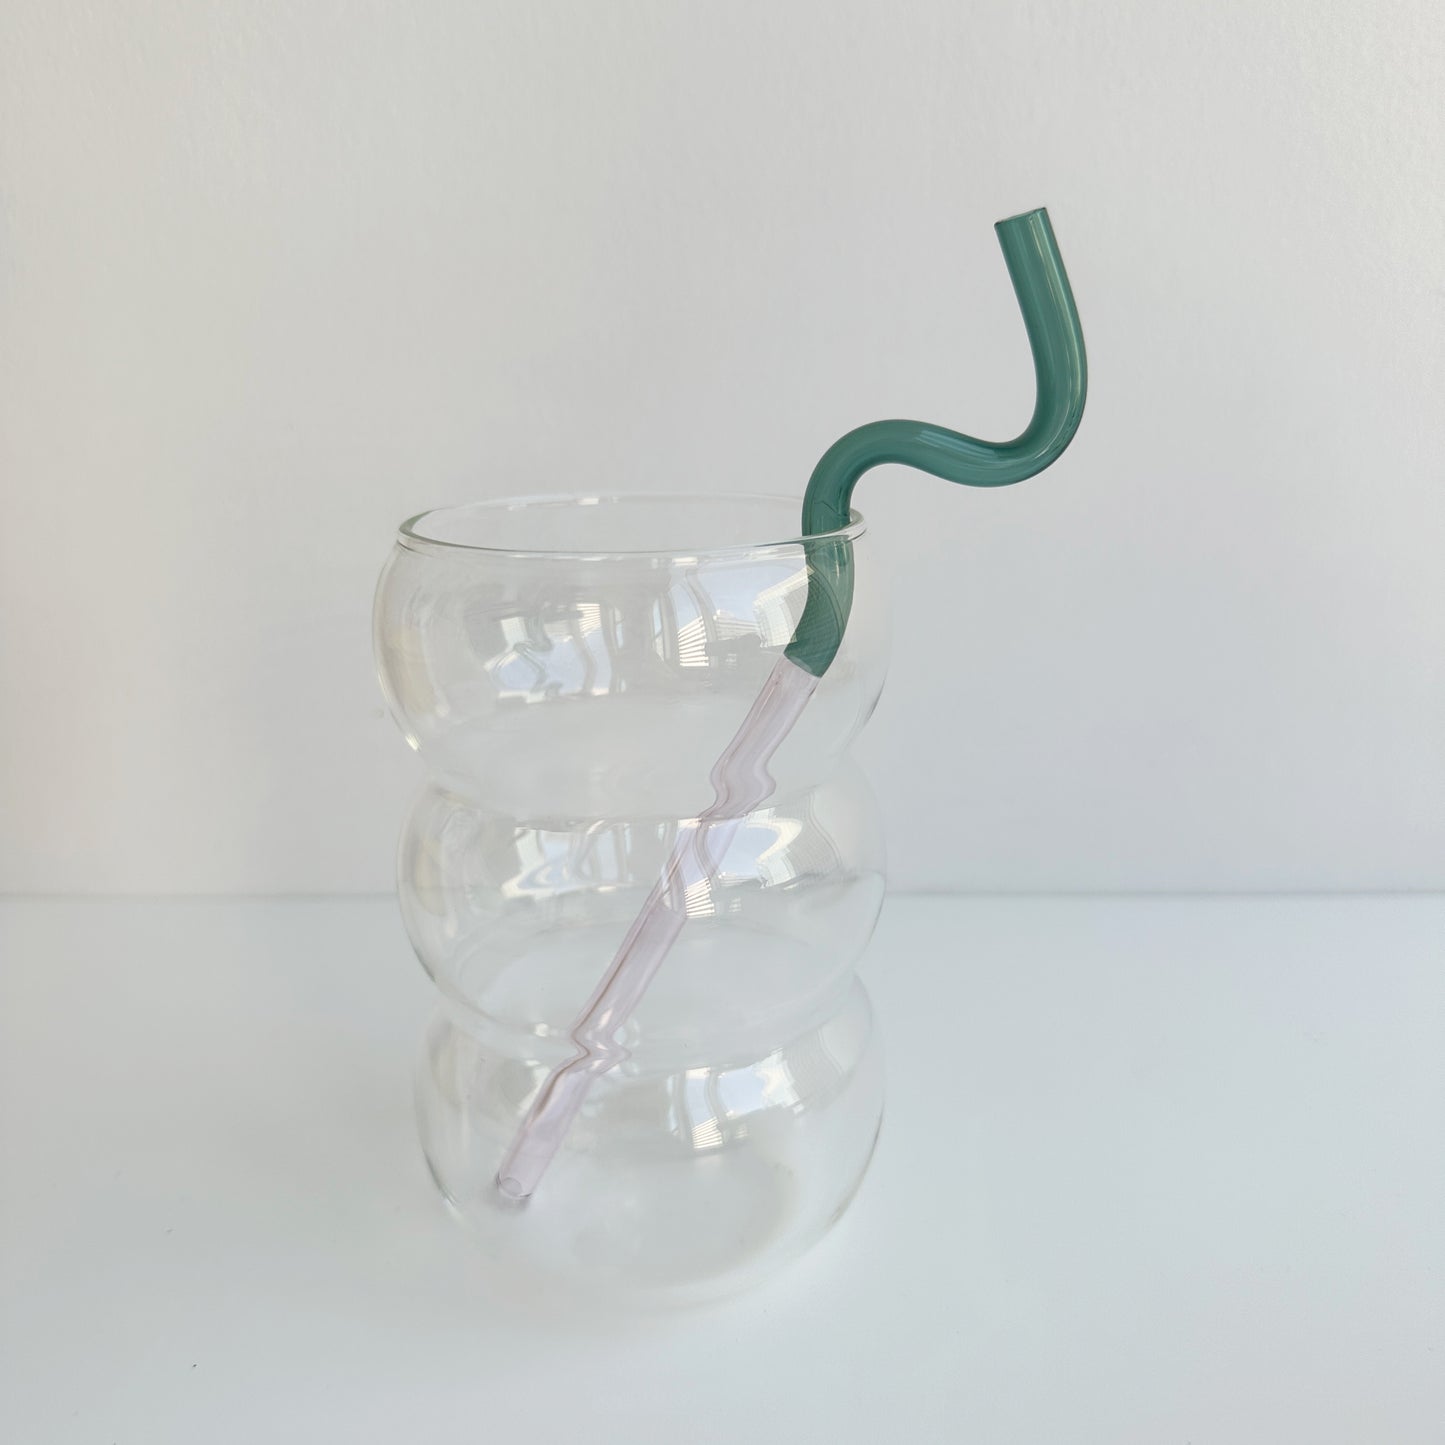 twisty glass straw